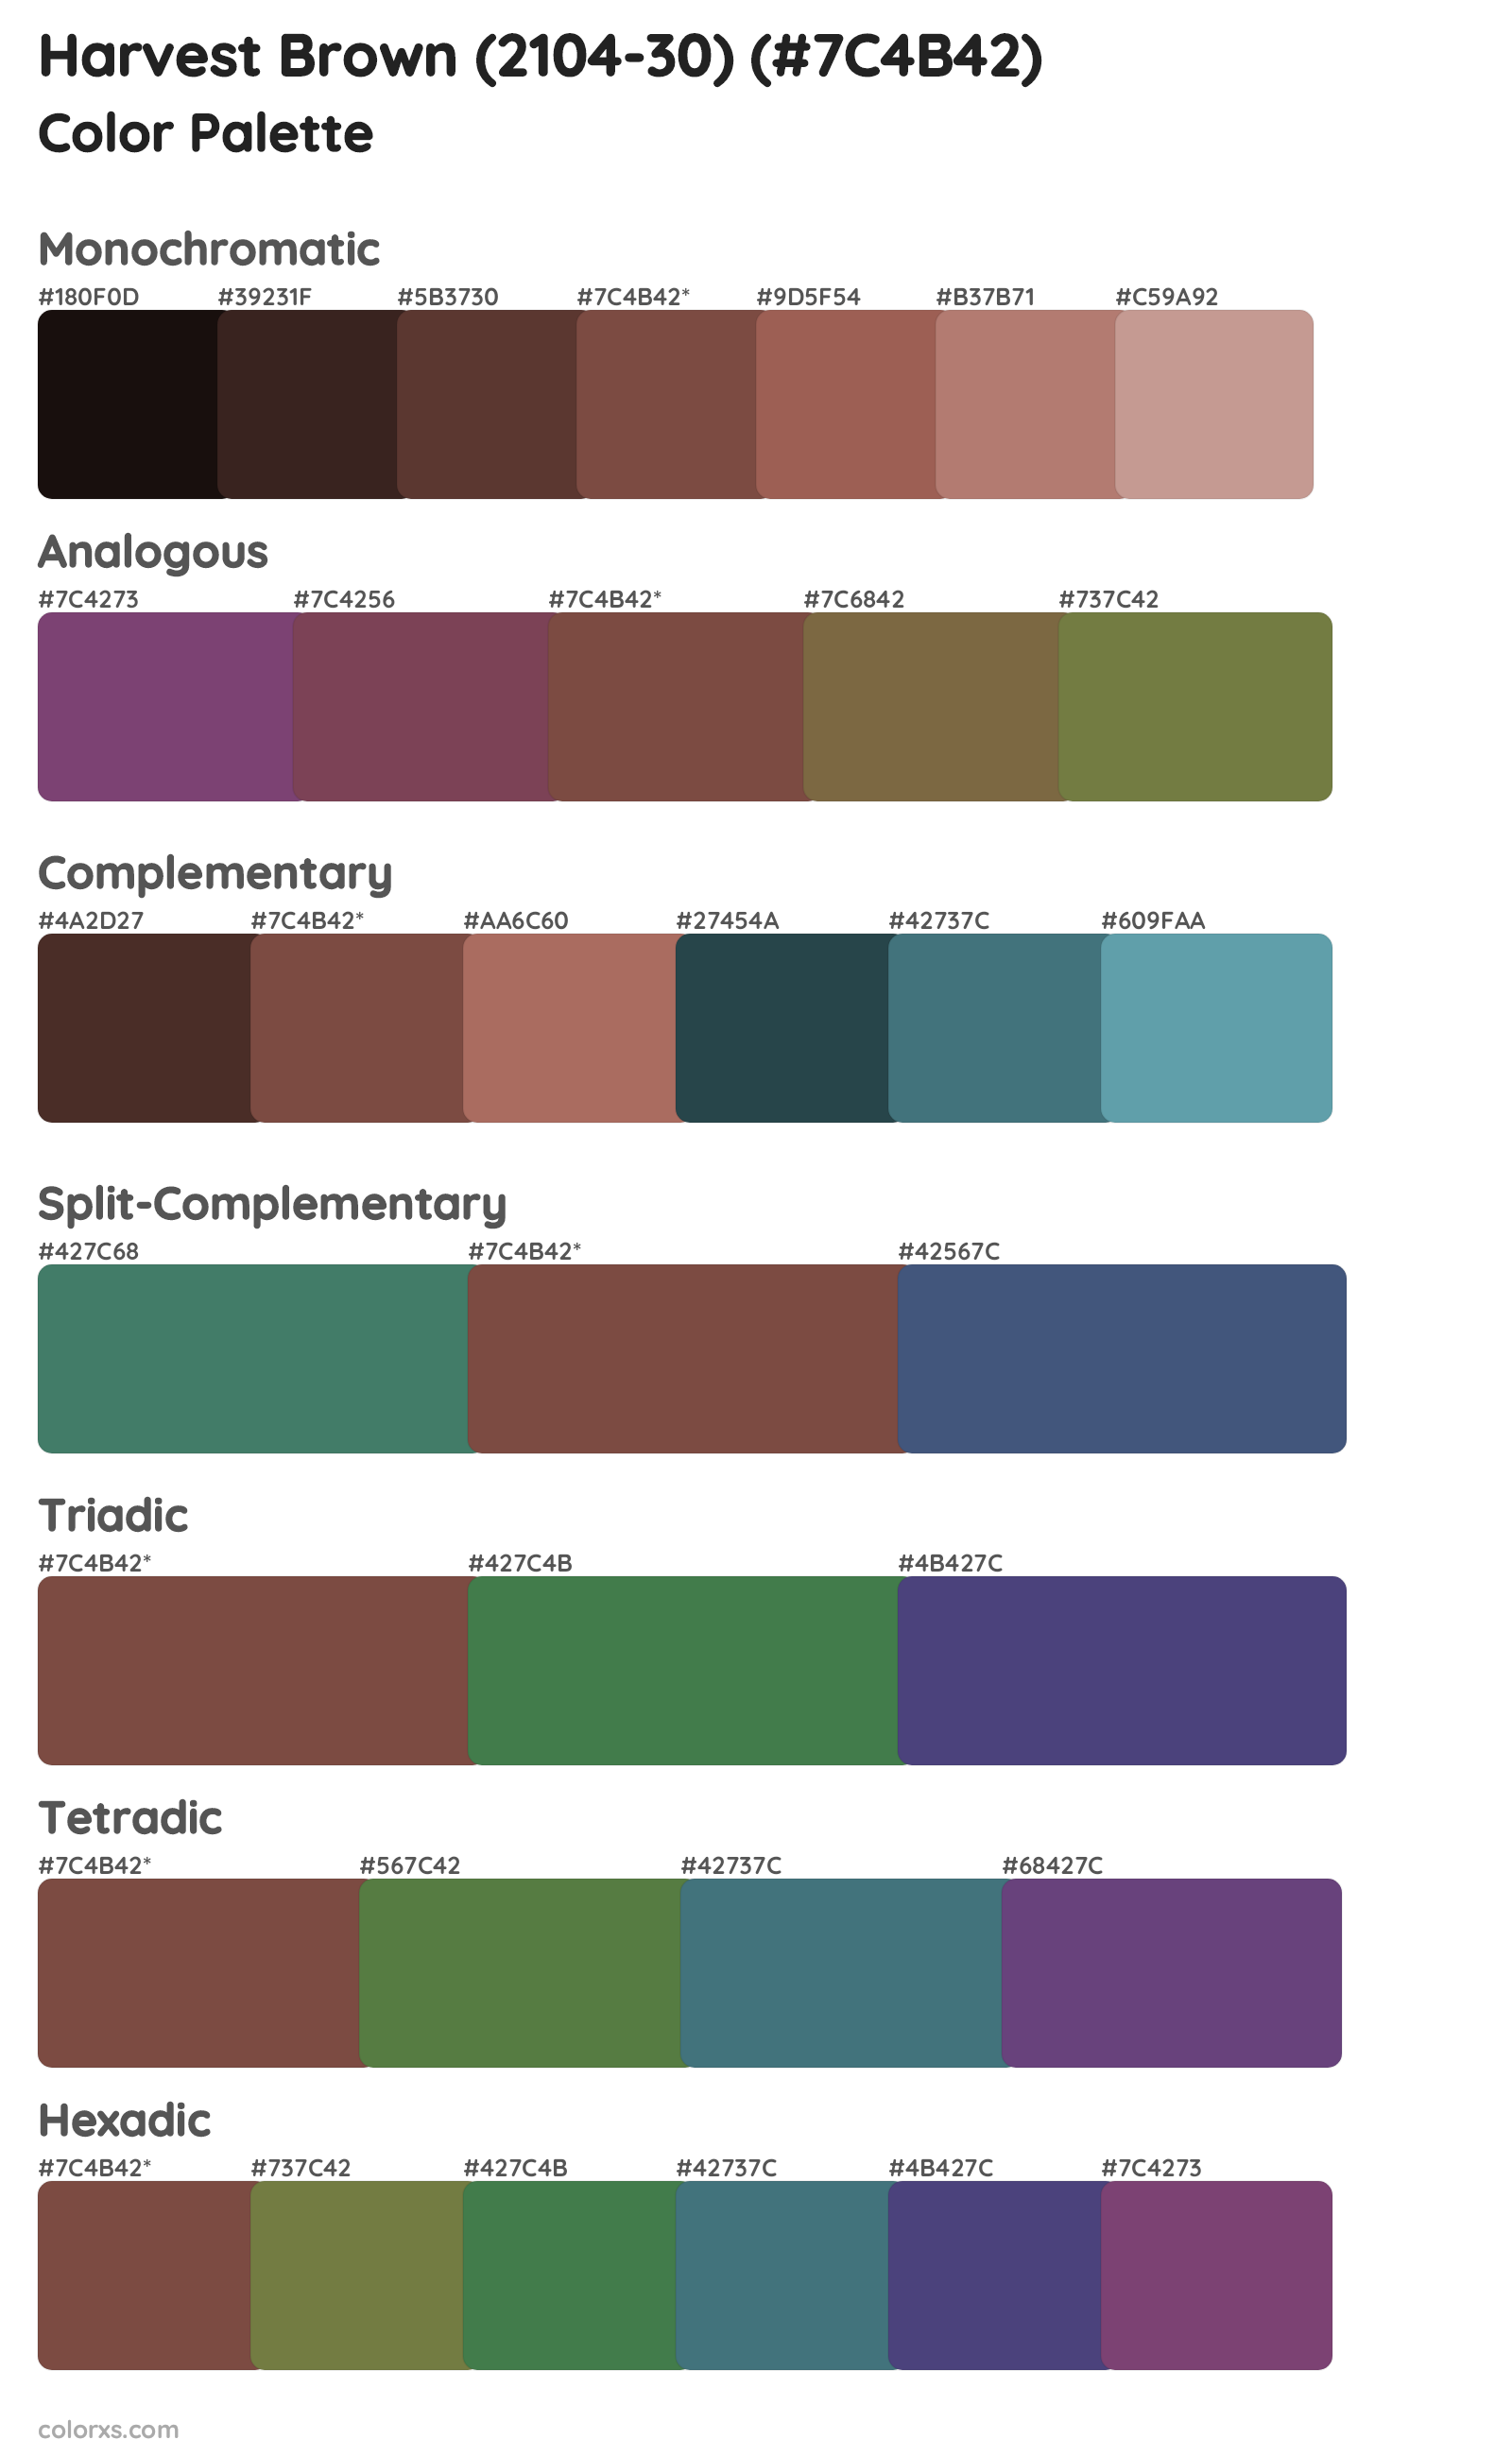 Harvest Brown (2104-30) Color Scheme Palettes